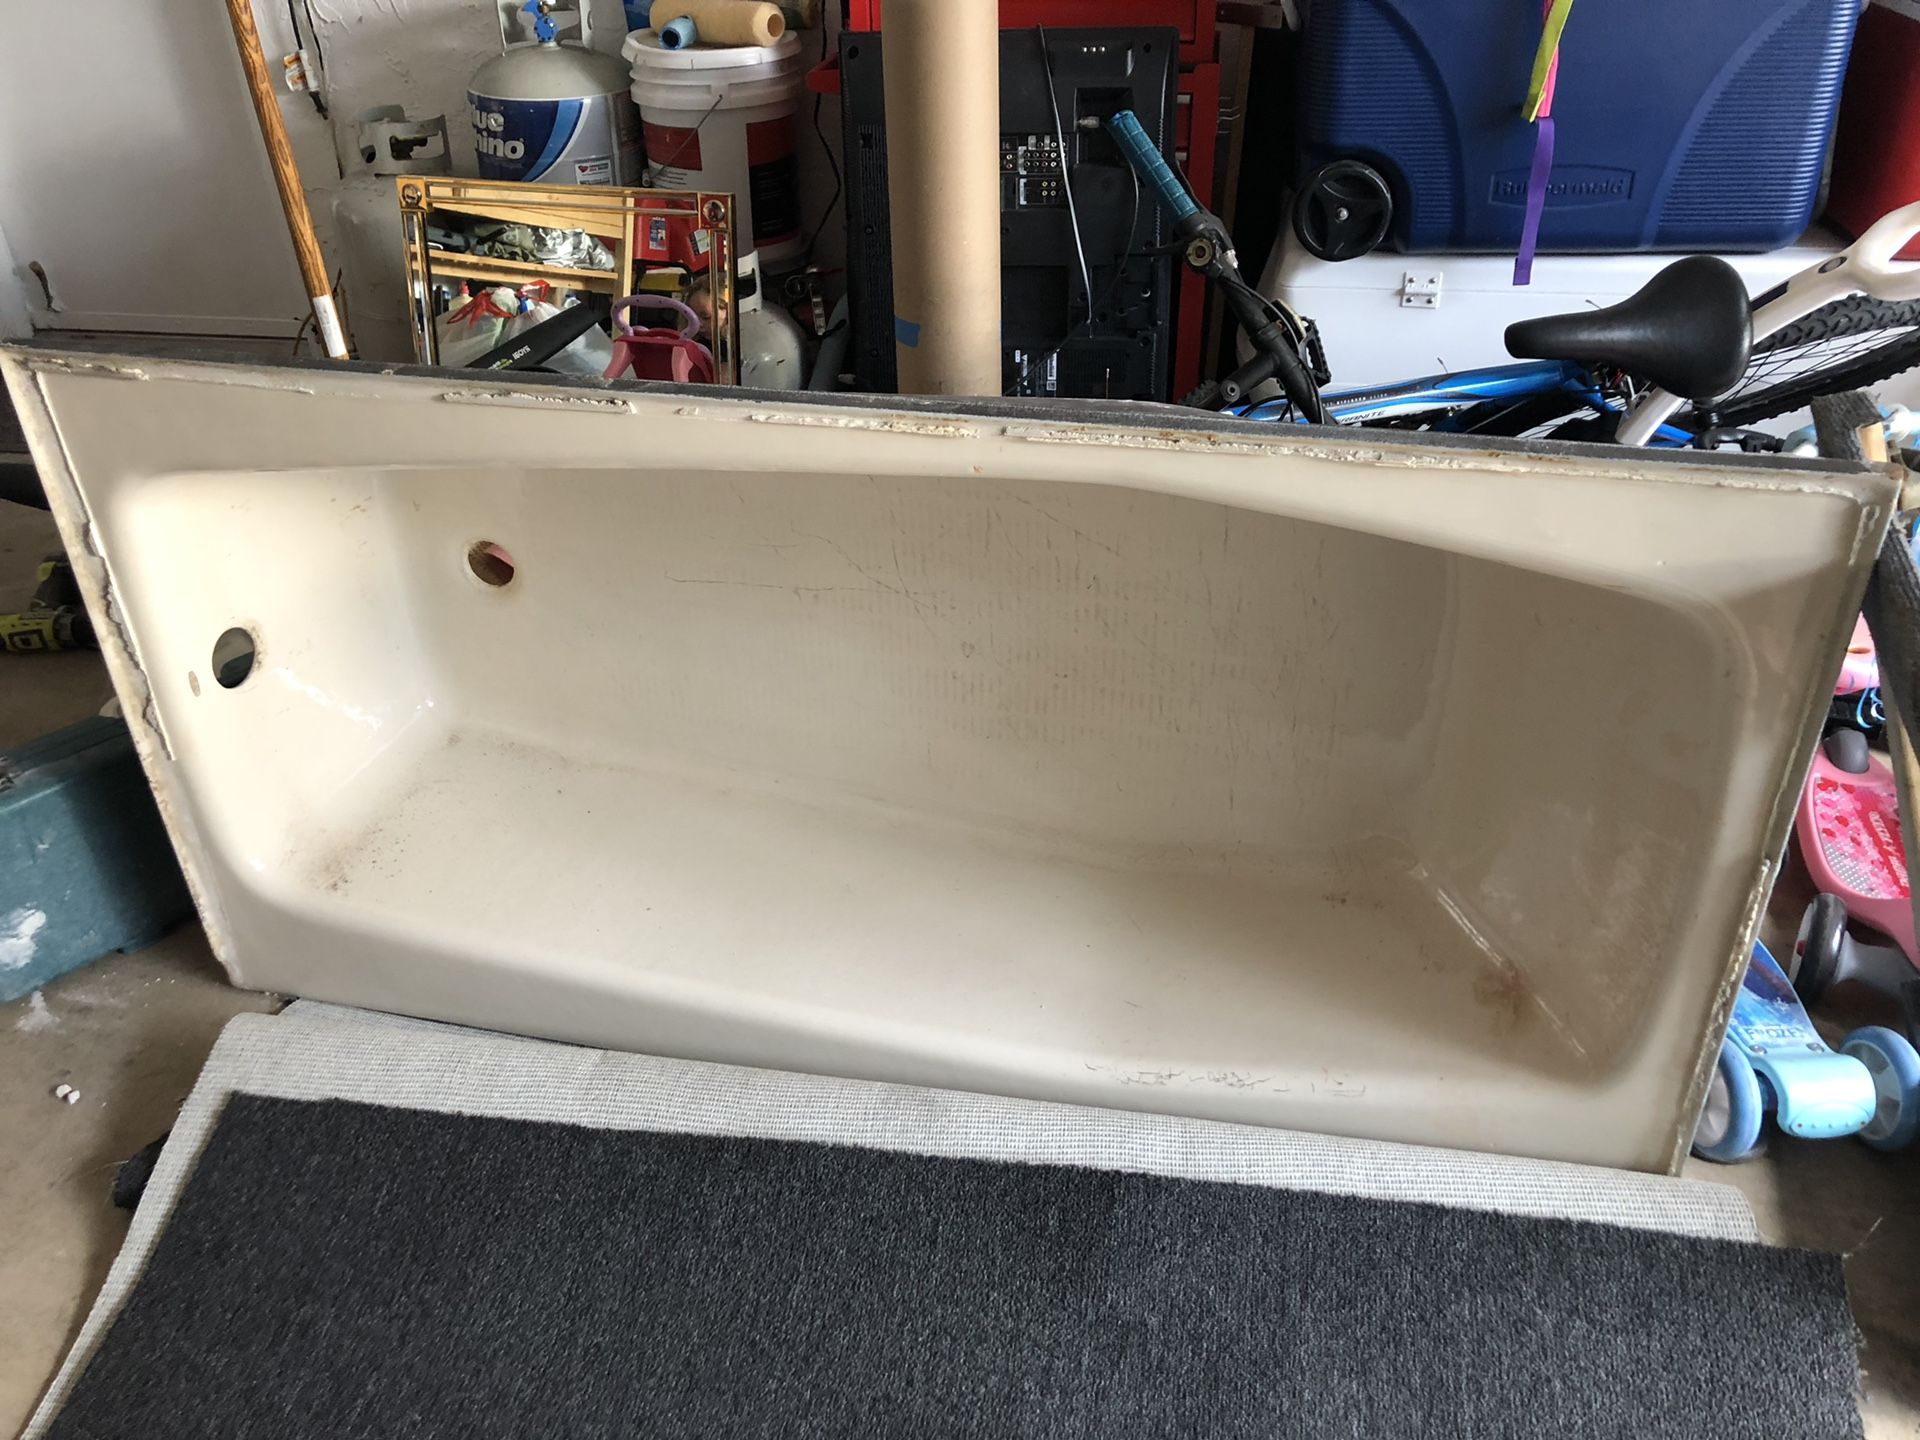 Free tub